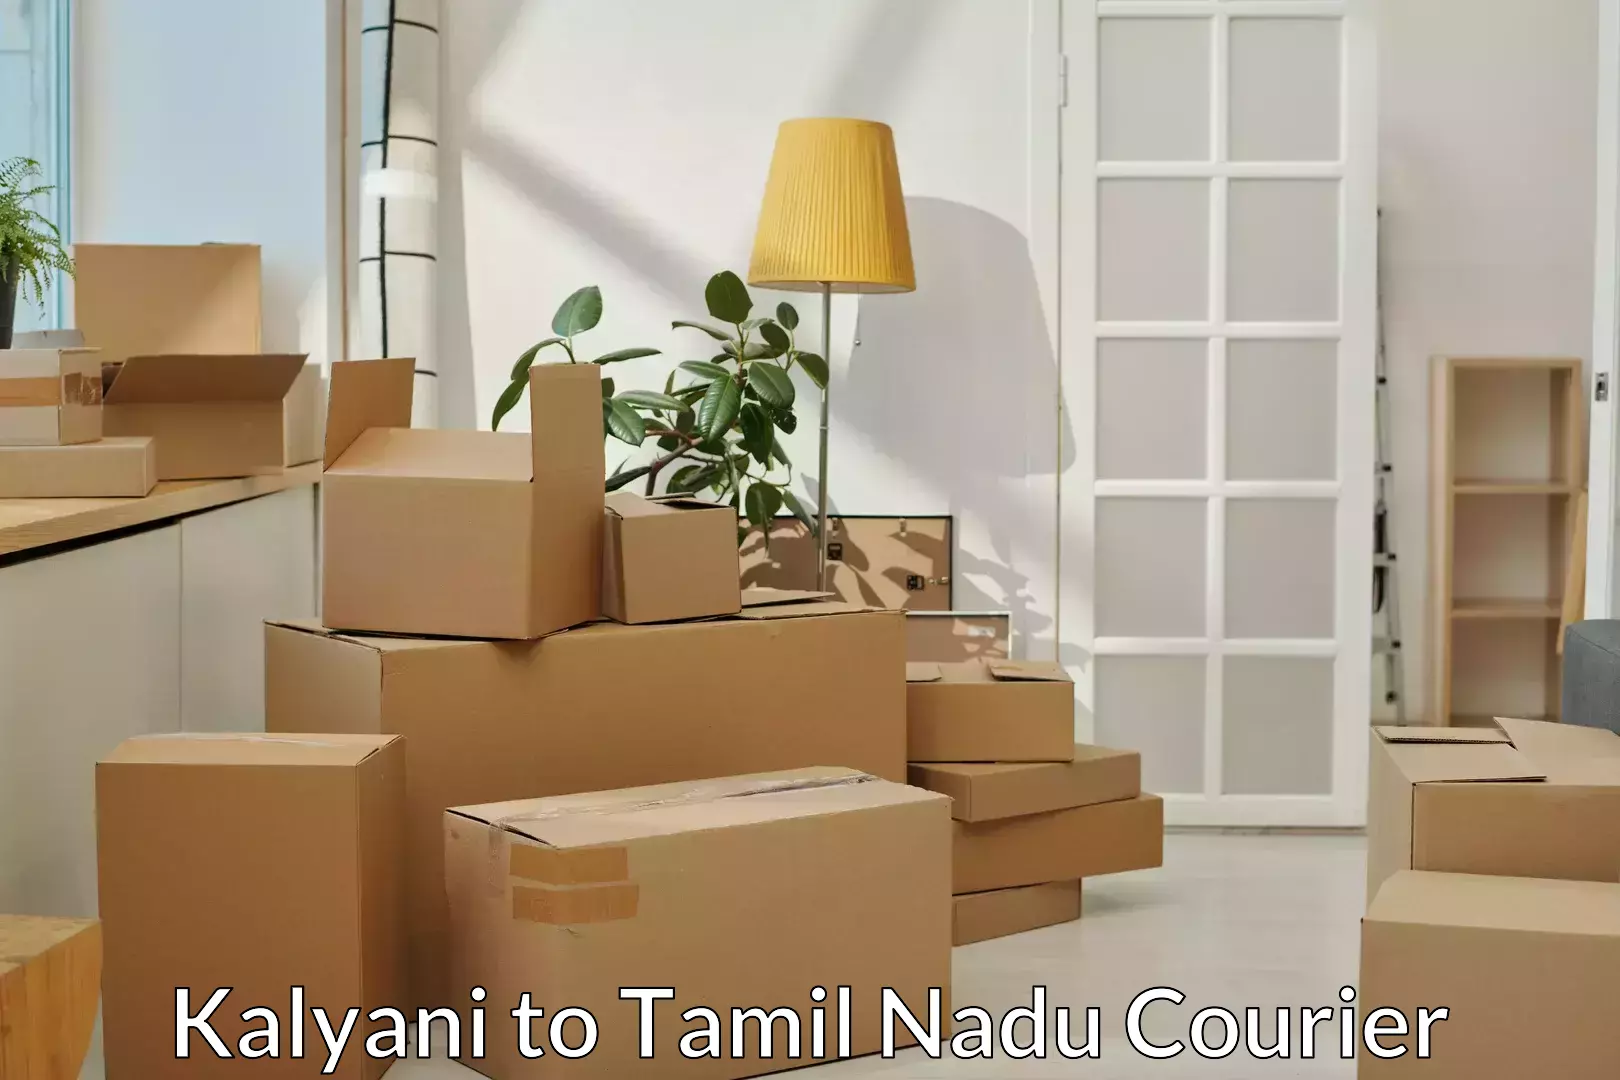 Efficient moving services Kalyani to Erode